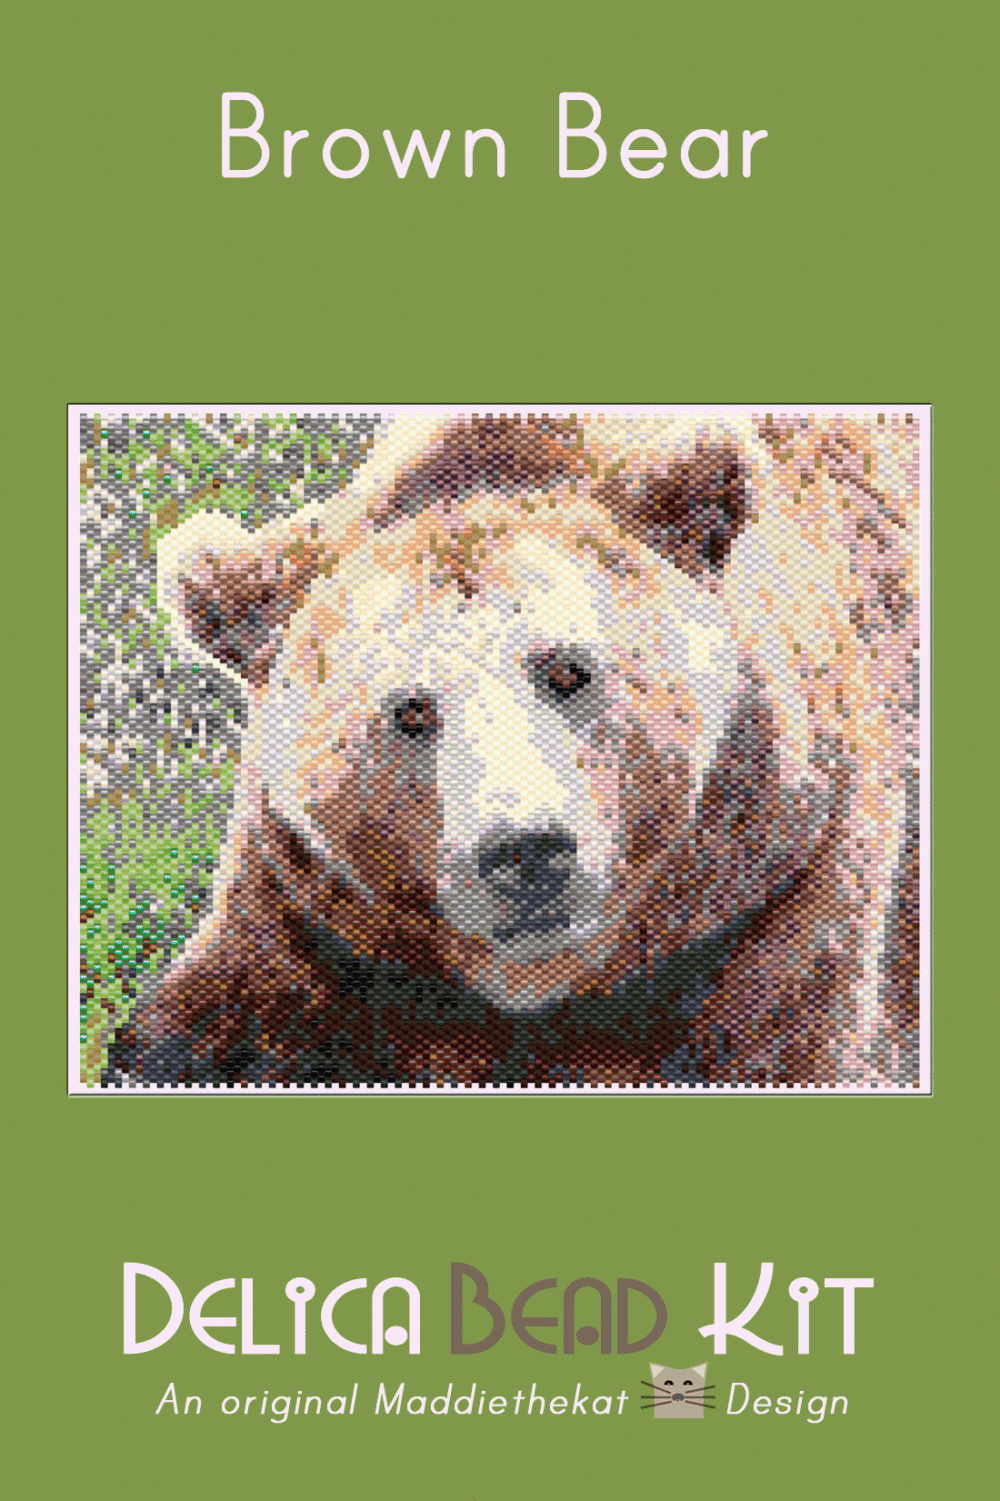 Brown Bear 01 Larger Peyote Bead Pattern PDF or Bead Kit